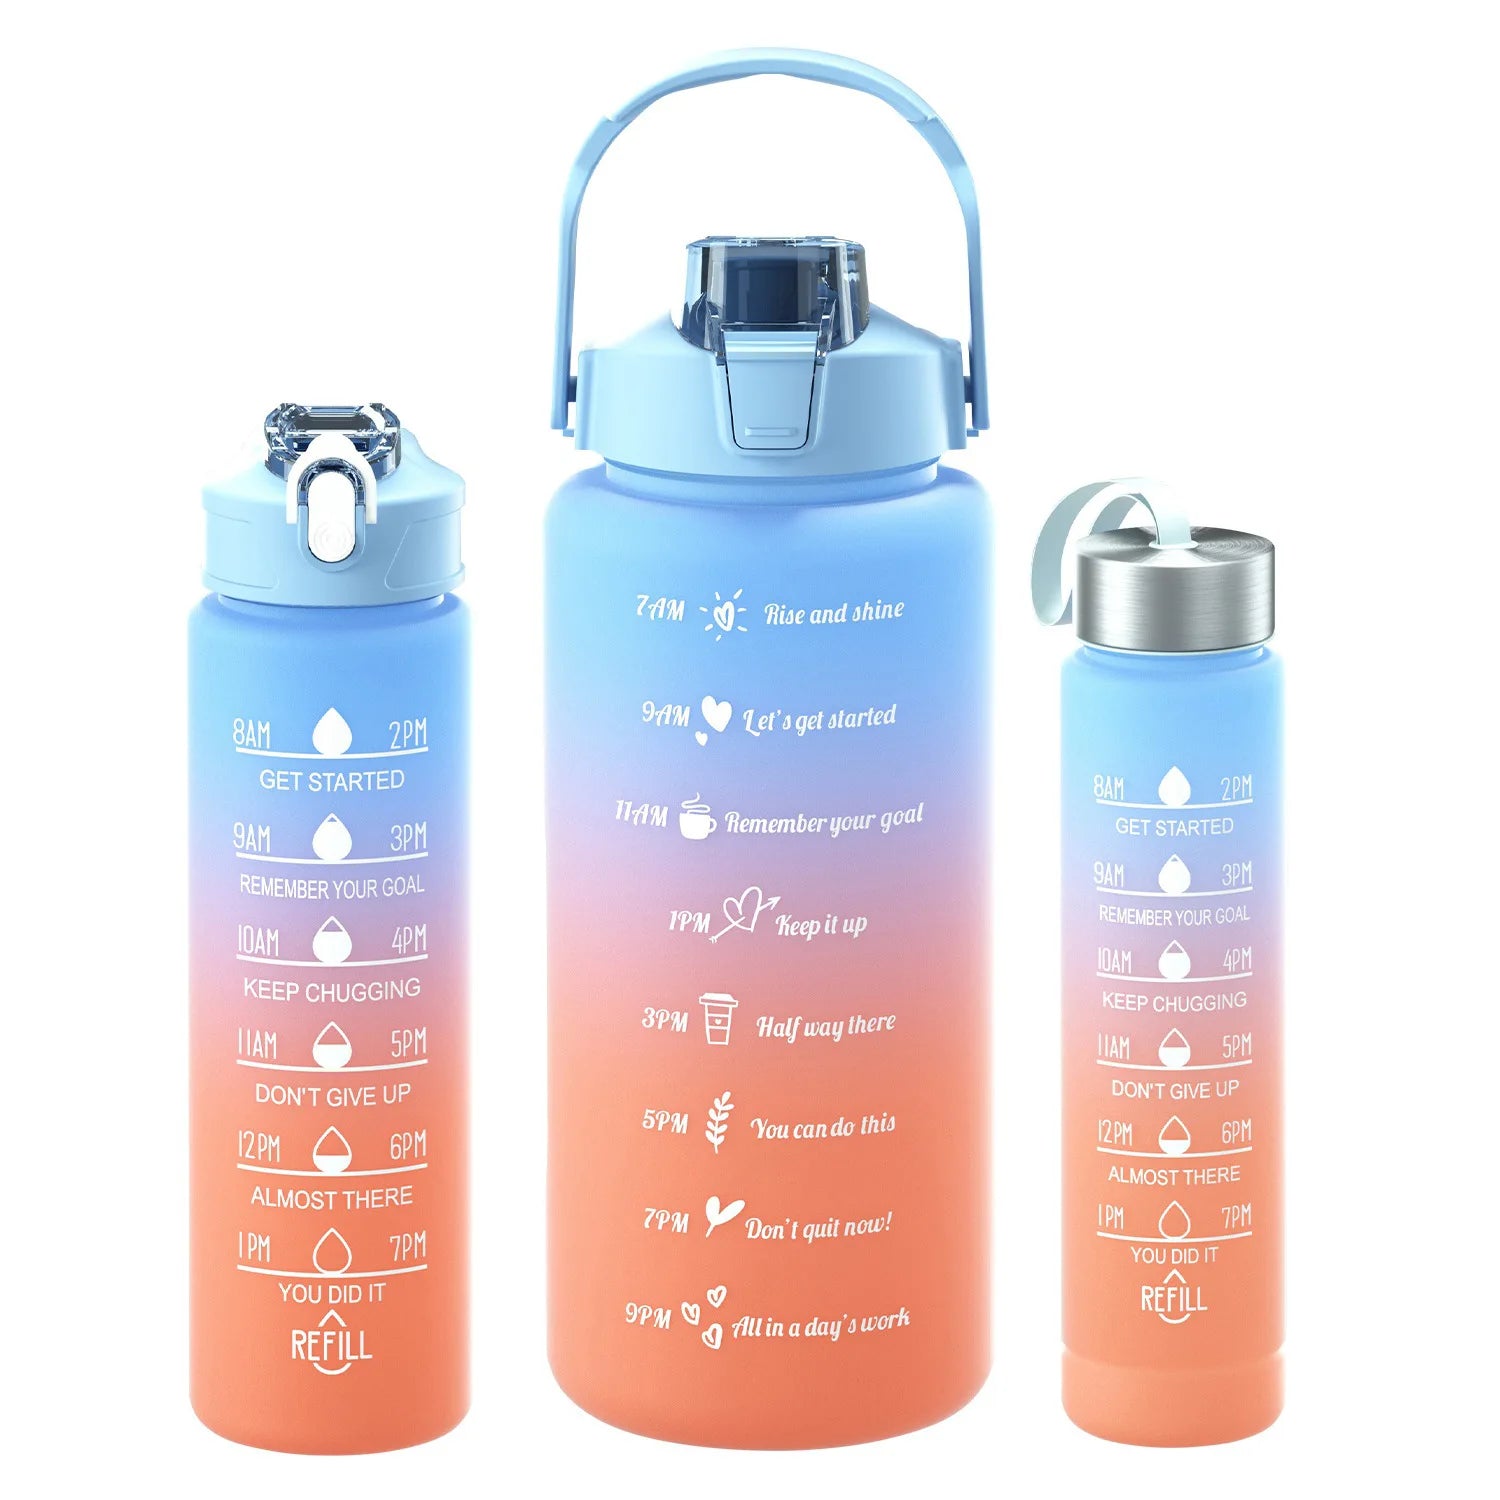 Das Bild zeigt drei Sporttrinkflaschen unterschiedlicher groesen mit farblichen Verlaeufen von blau zu orange und Zeitmarkierungen.